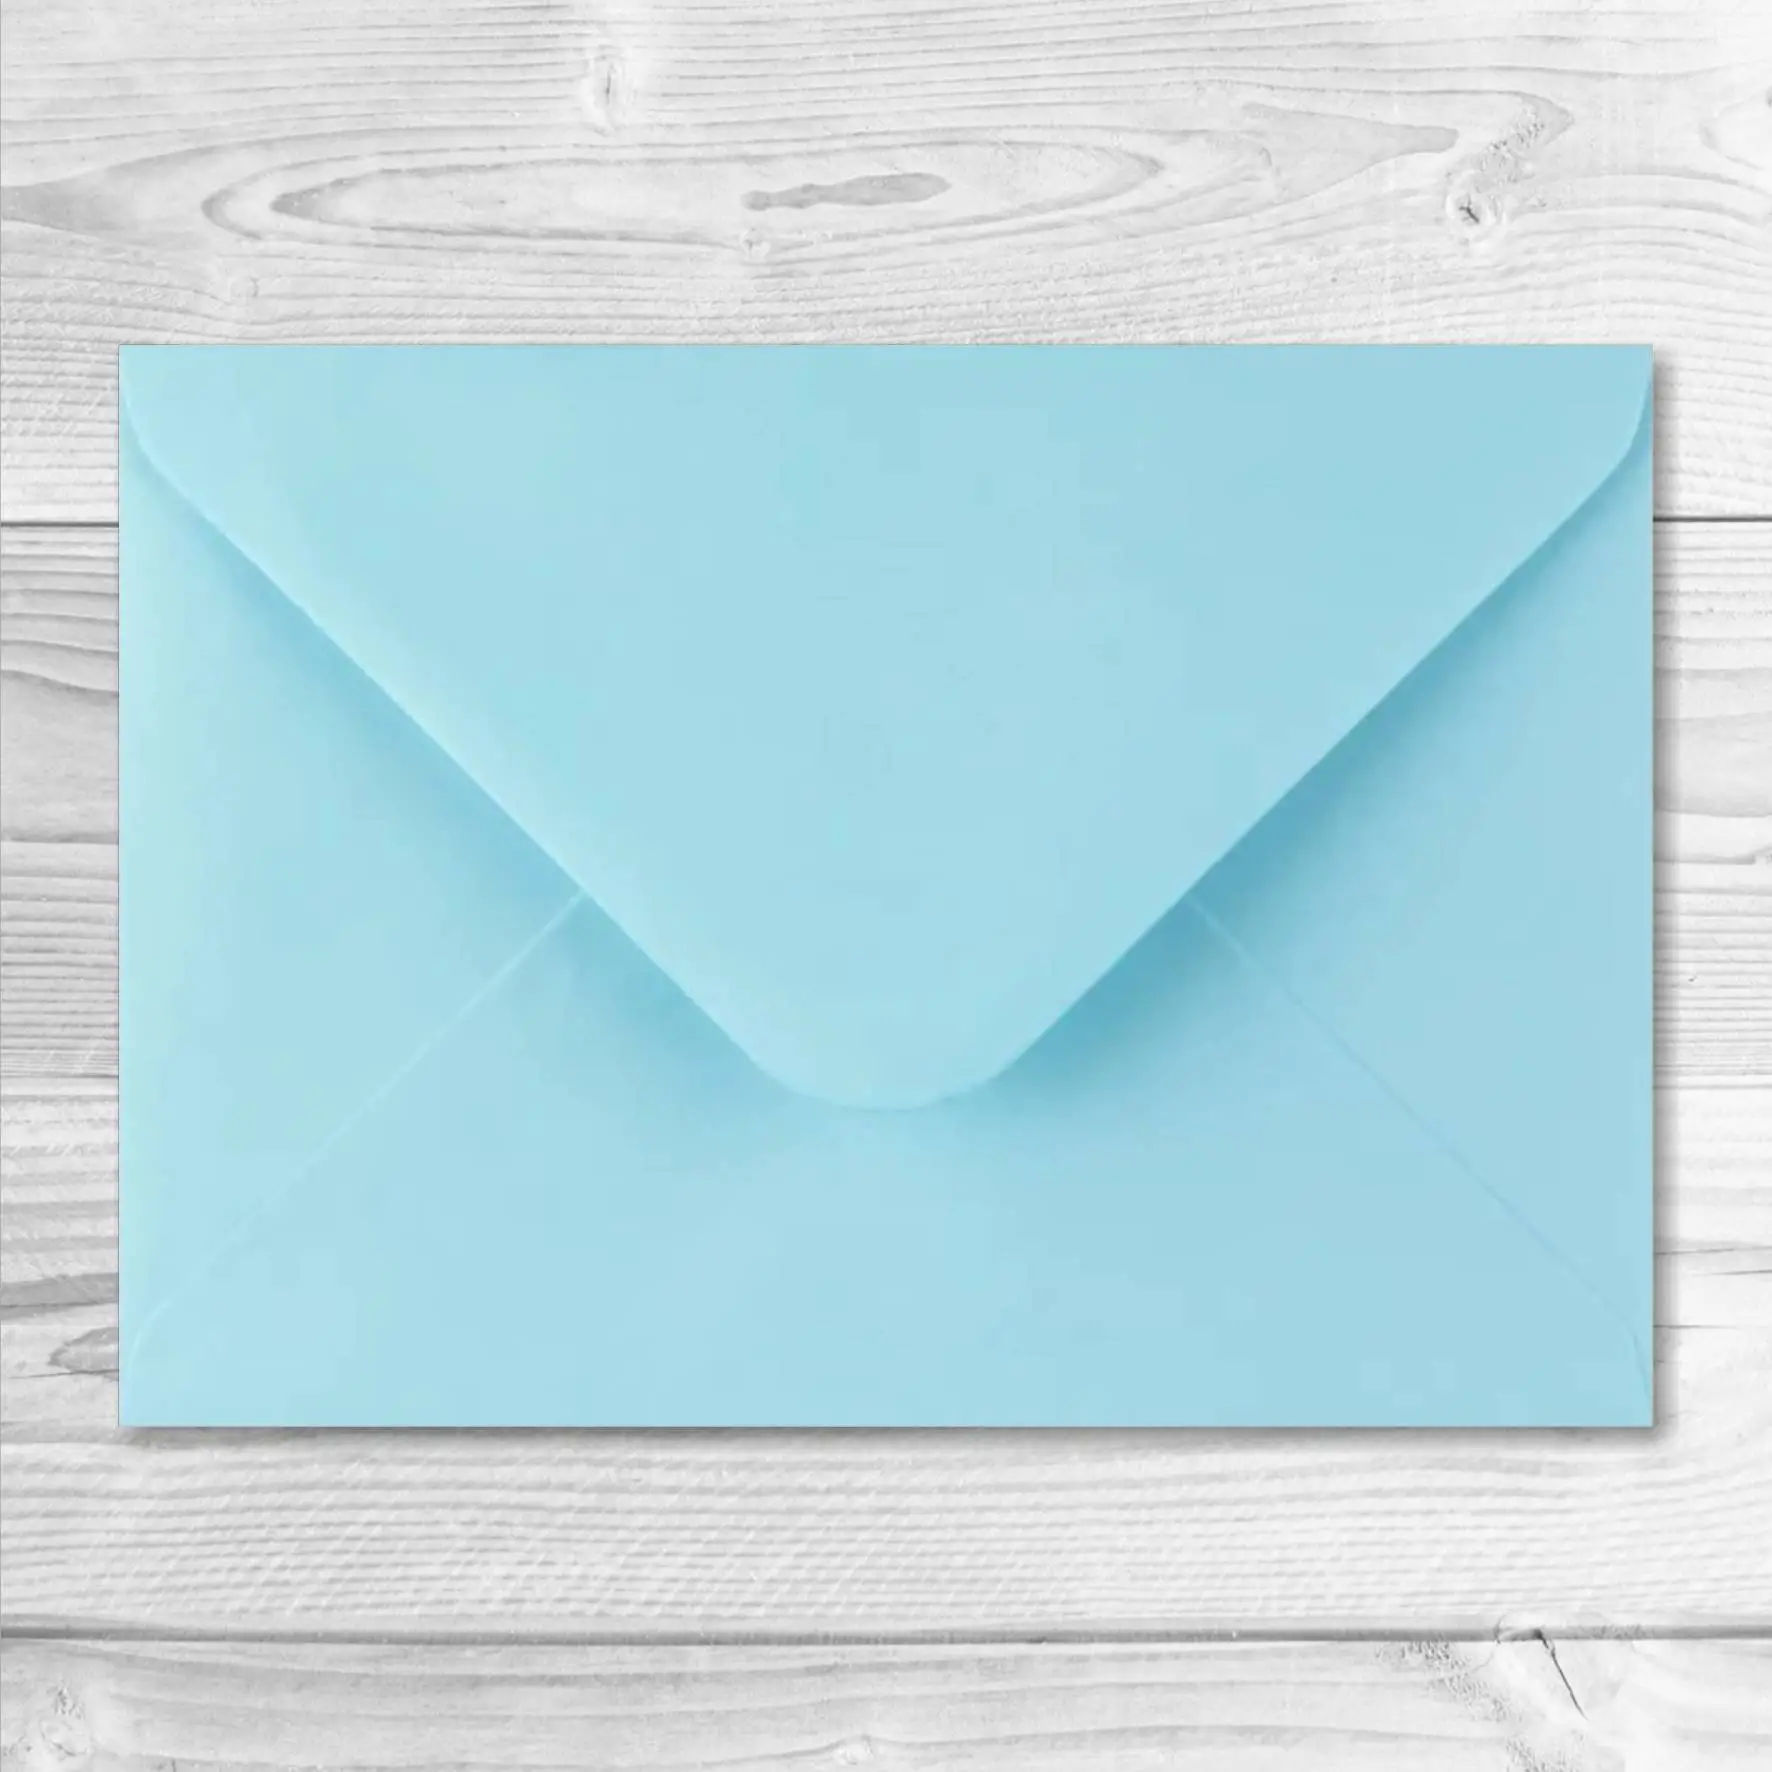 Comment faire une enveloppe ? 3 types d'enveloppes à réaliser - Pratiks